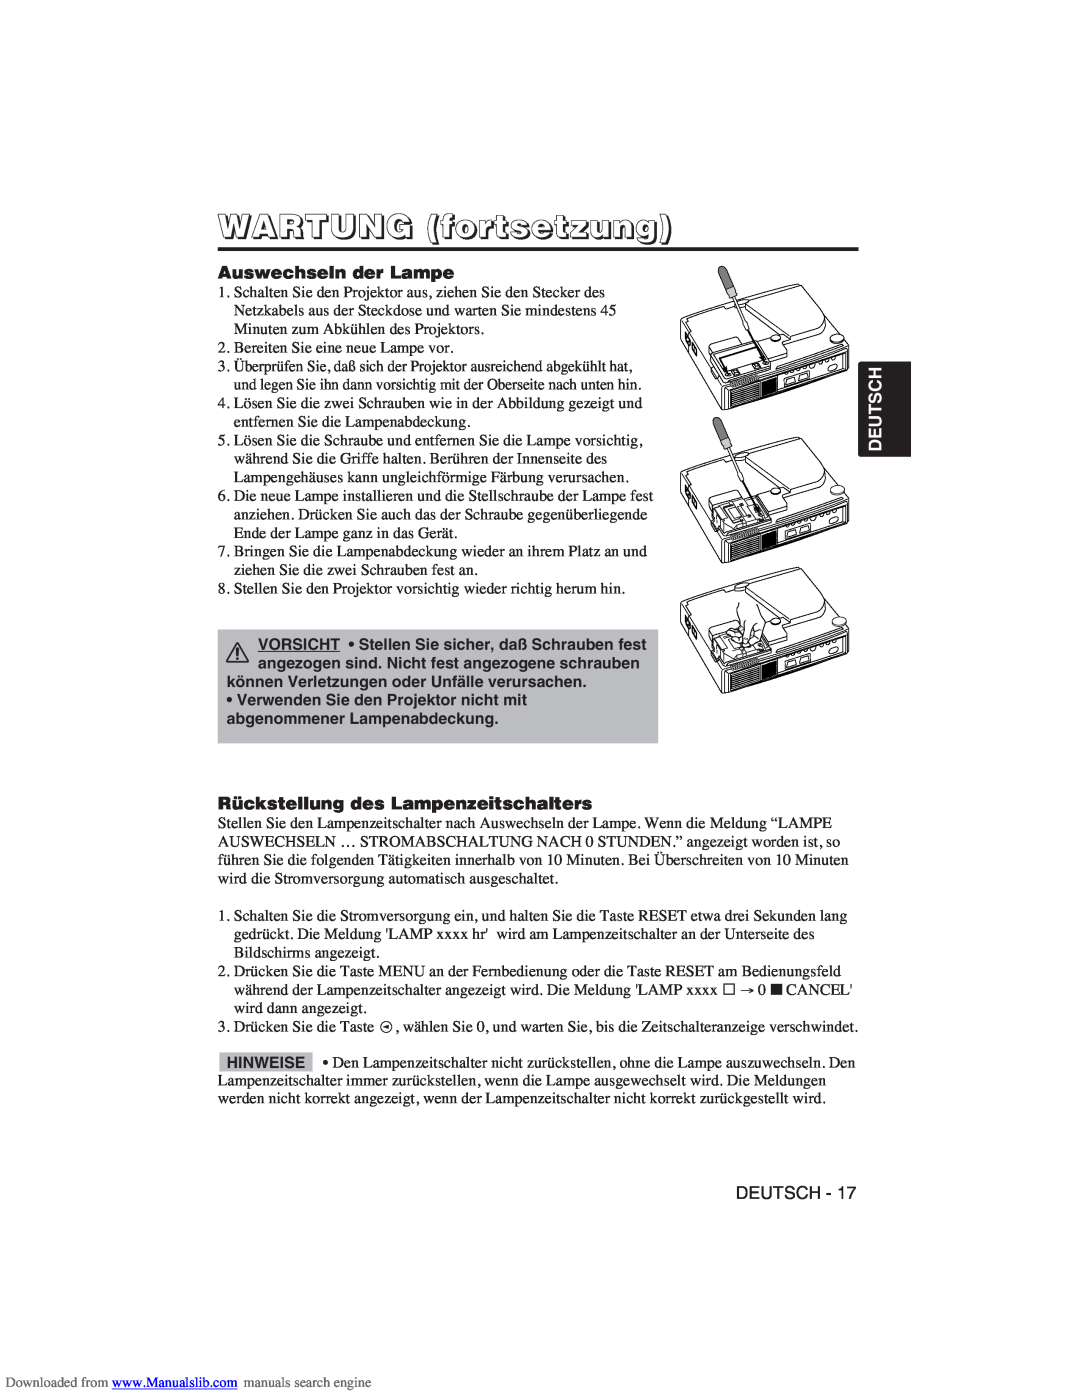 Hitachi CP-X275W user manual WARTUNG fortsetzung, Auswechseln der Lampe, Rückstellung des Lampenzeitschalters, Deutsch 